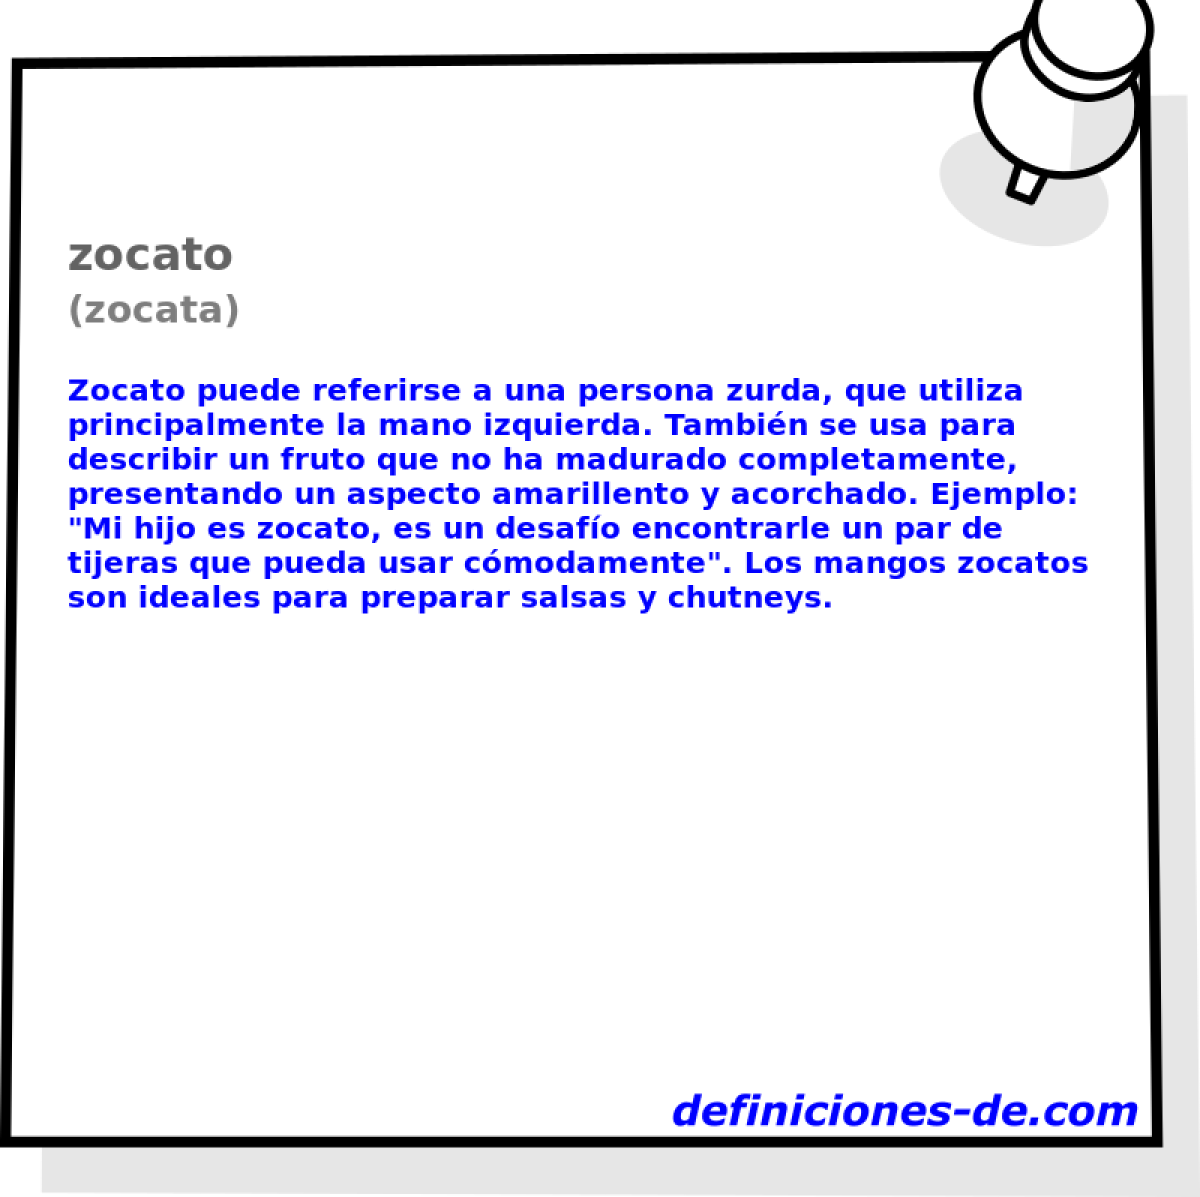 zocato (zocata)